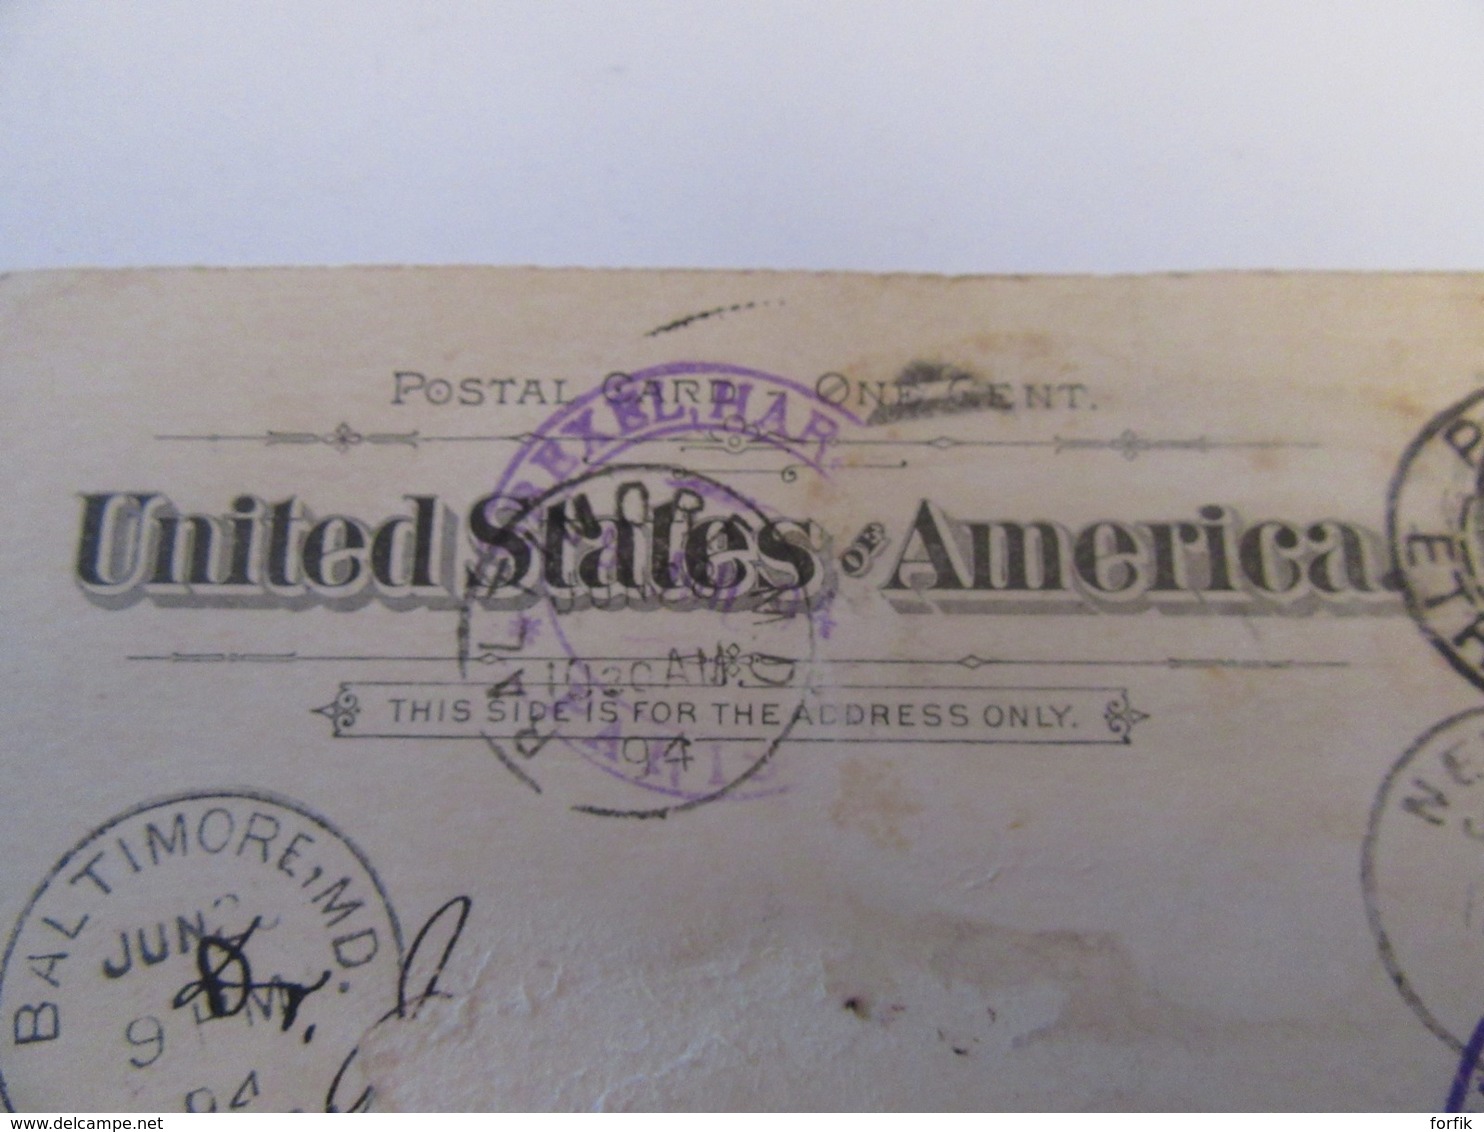 Etats-Unis / USA - Entier Postal One Cent Circulé En 1894 - Cachets Dont "Forwarded" Et Paris Etranger Sur Le Timbre - ...-1900